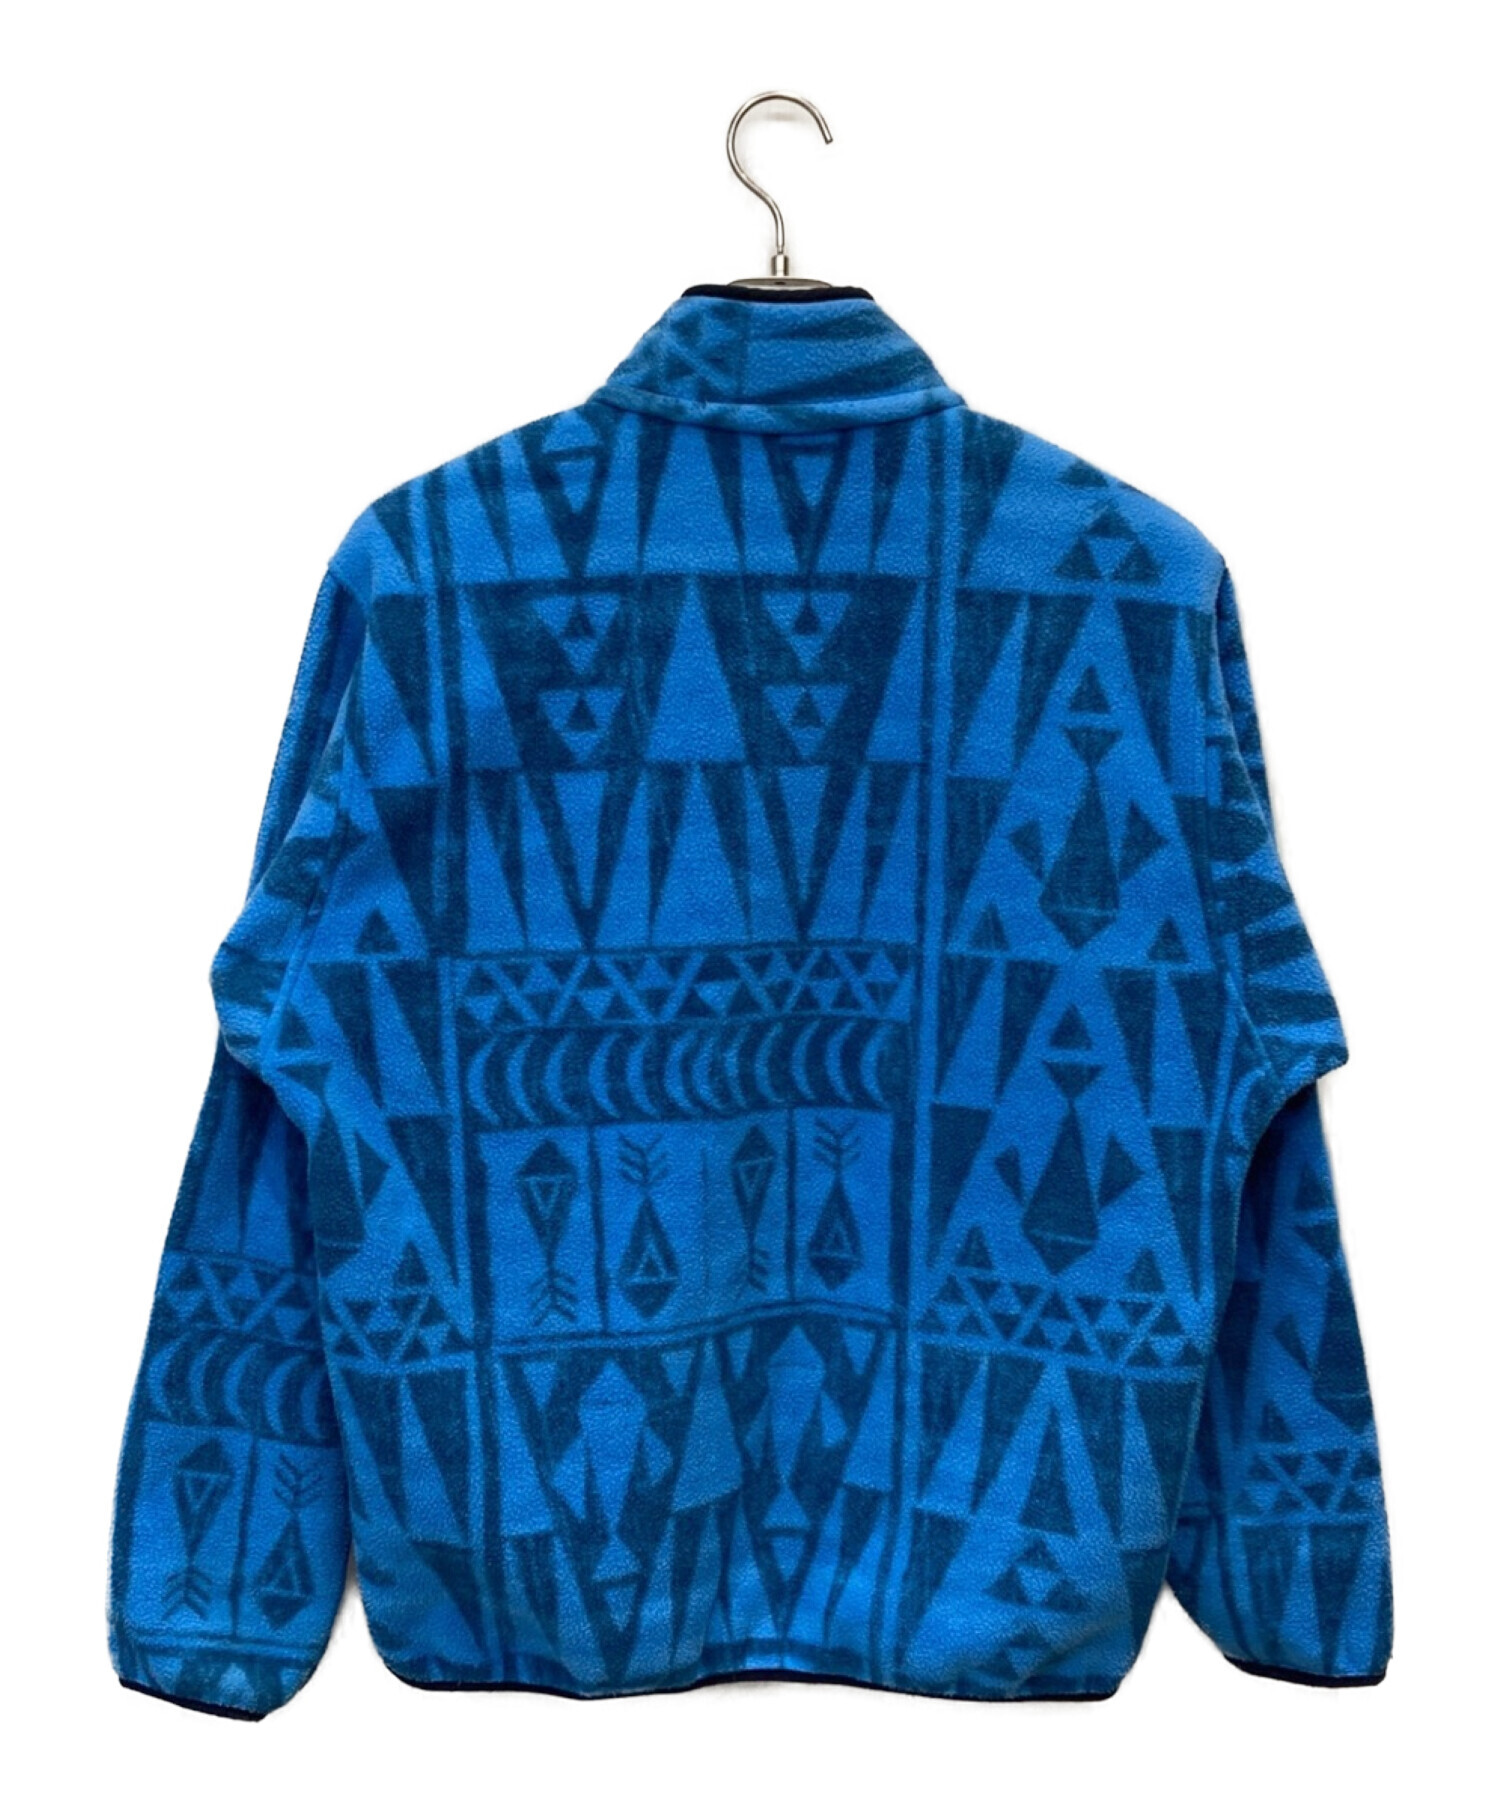 Patagonia (パタゴニア) ライトウェイトシンチラ スナップT Sフリース ジャケット ブルー サイズ:M